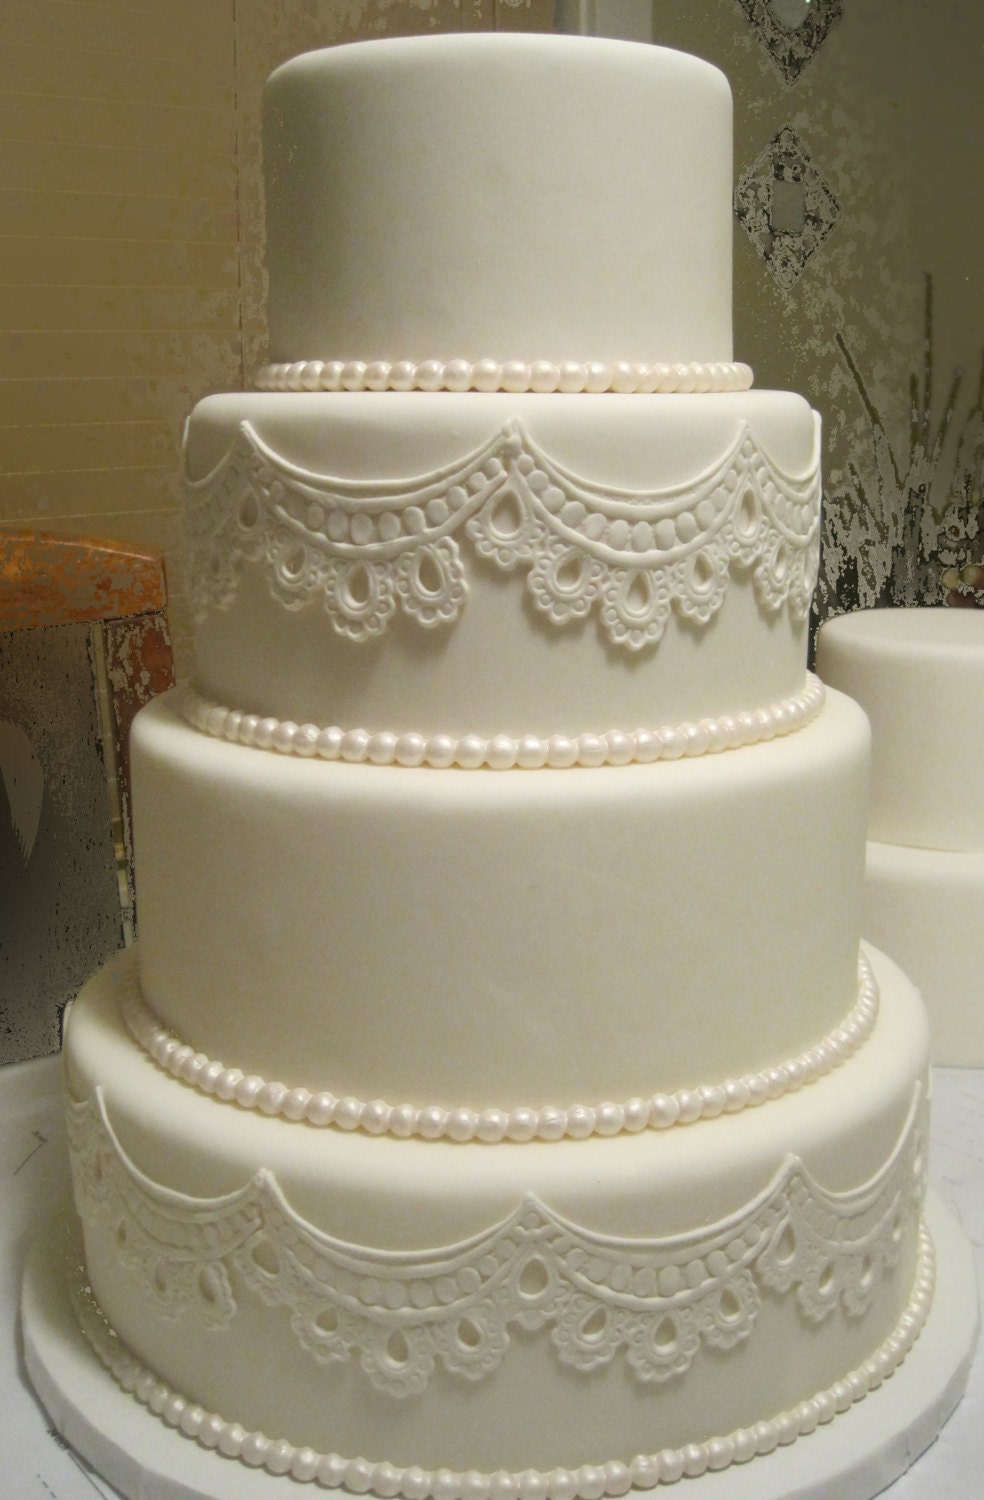 Four Tier Fondant Wedding Cake (artificial) - SUGARonTOPsugarart